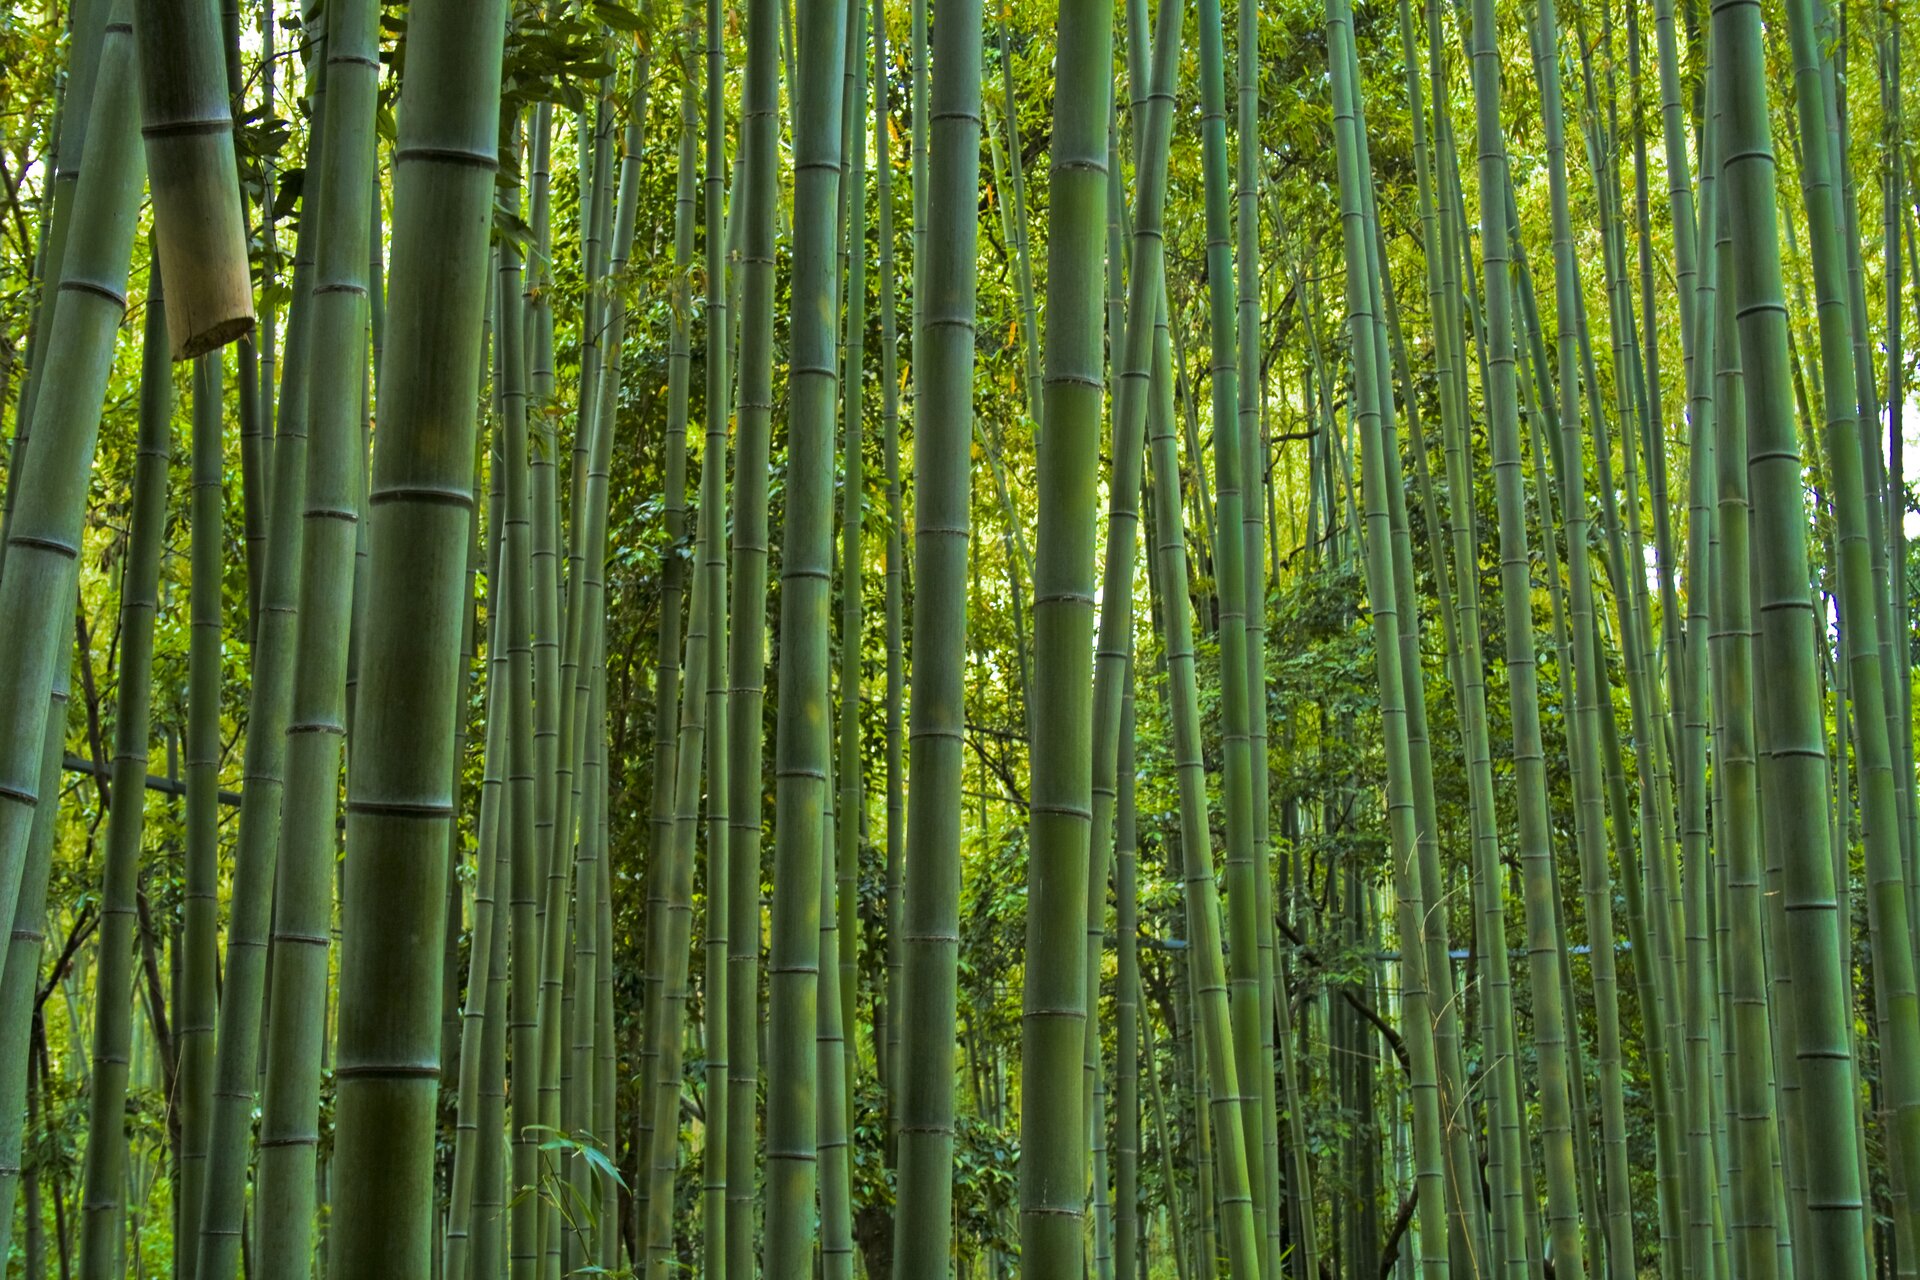 Fotografia przedstawia wnętrze zarośli bambusowych. Wiele zielonych, cienkich łodyg rośnie gęsto obok siebie. W tle zielono – żółte bambusy z liśćmi.